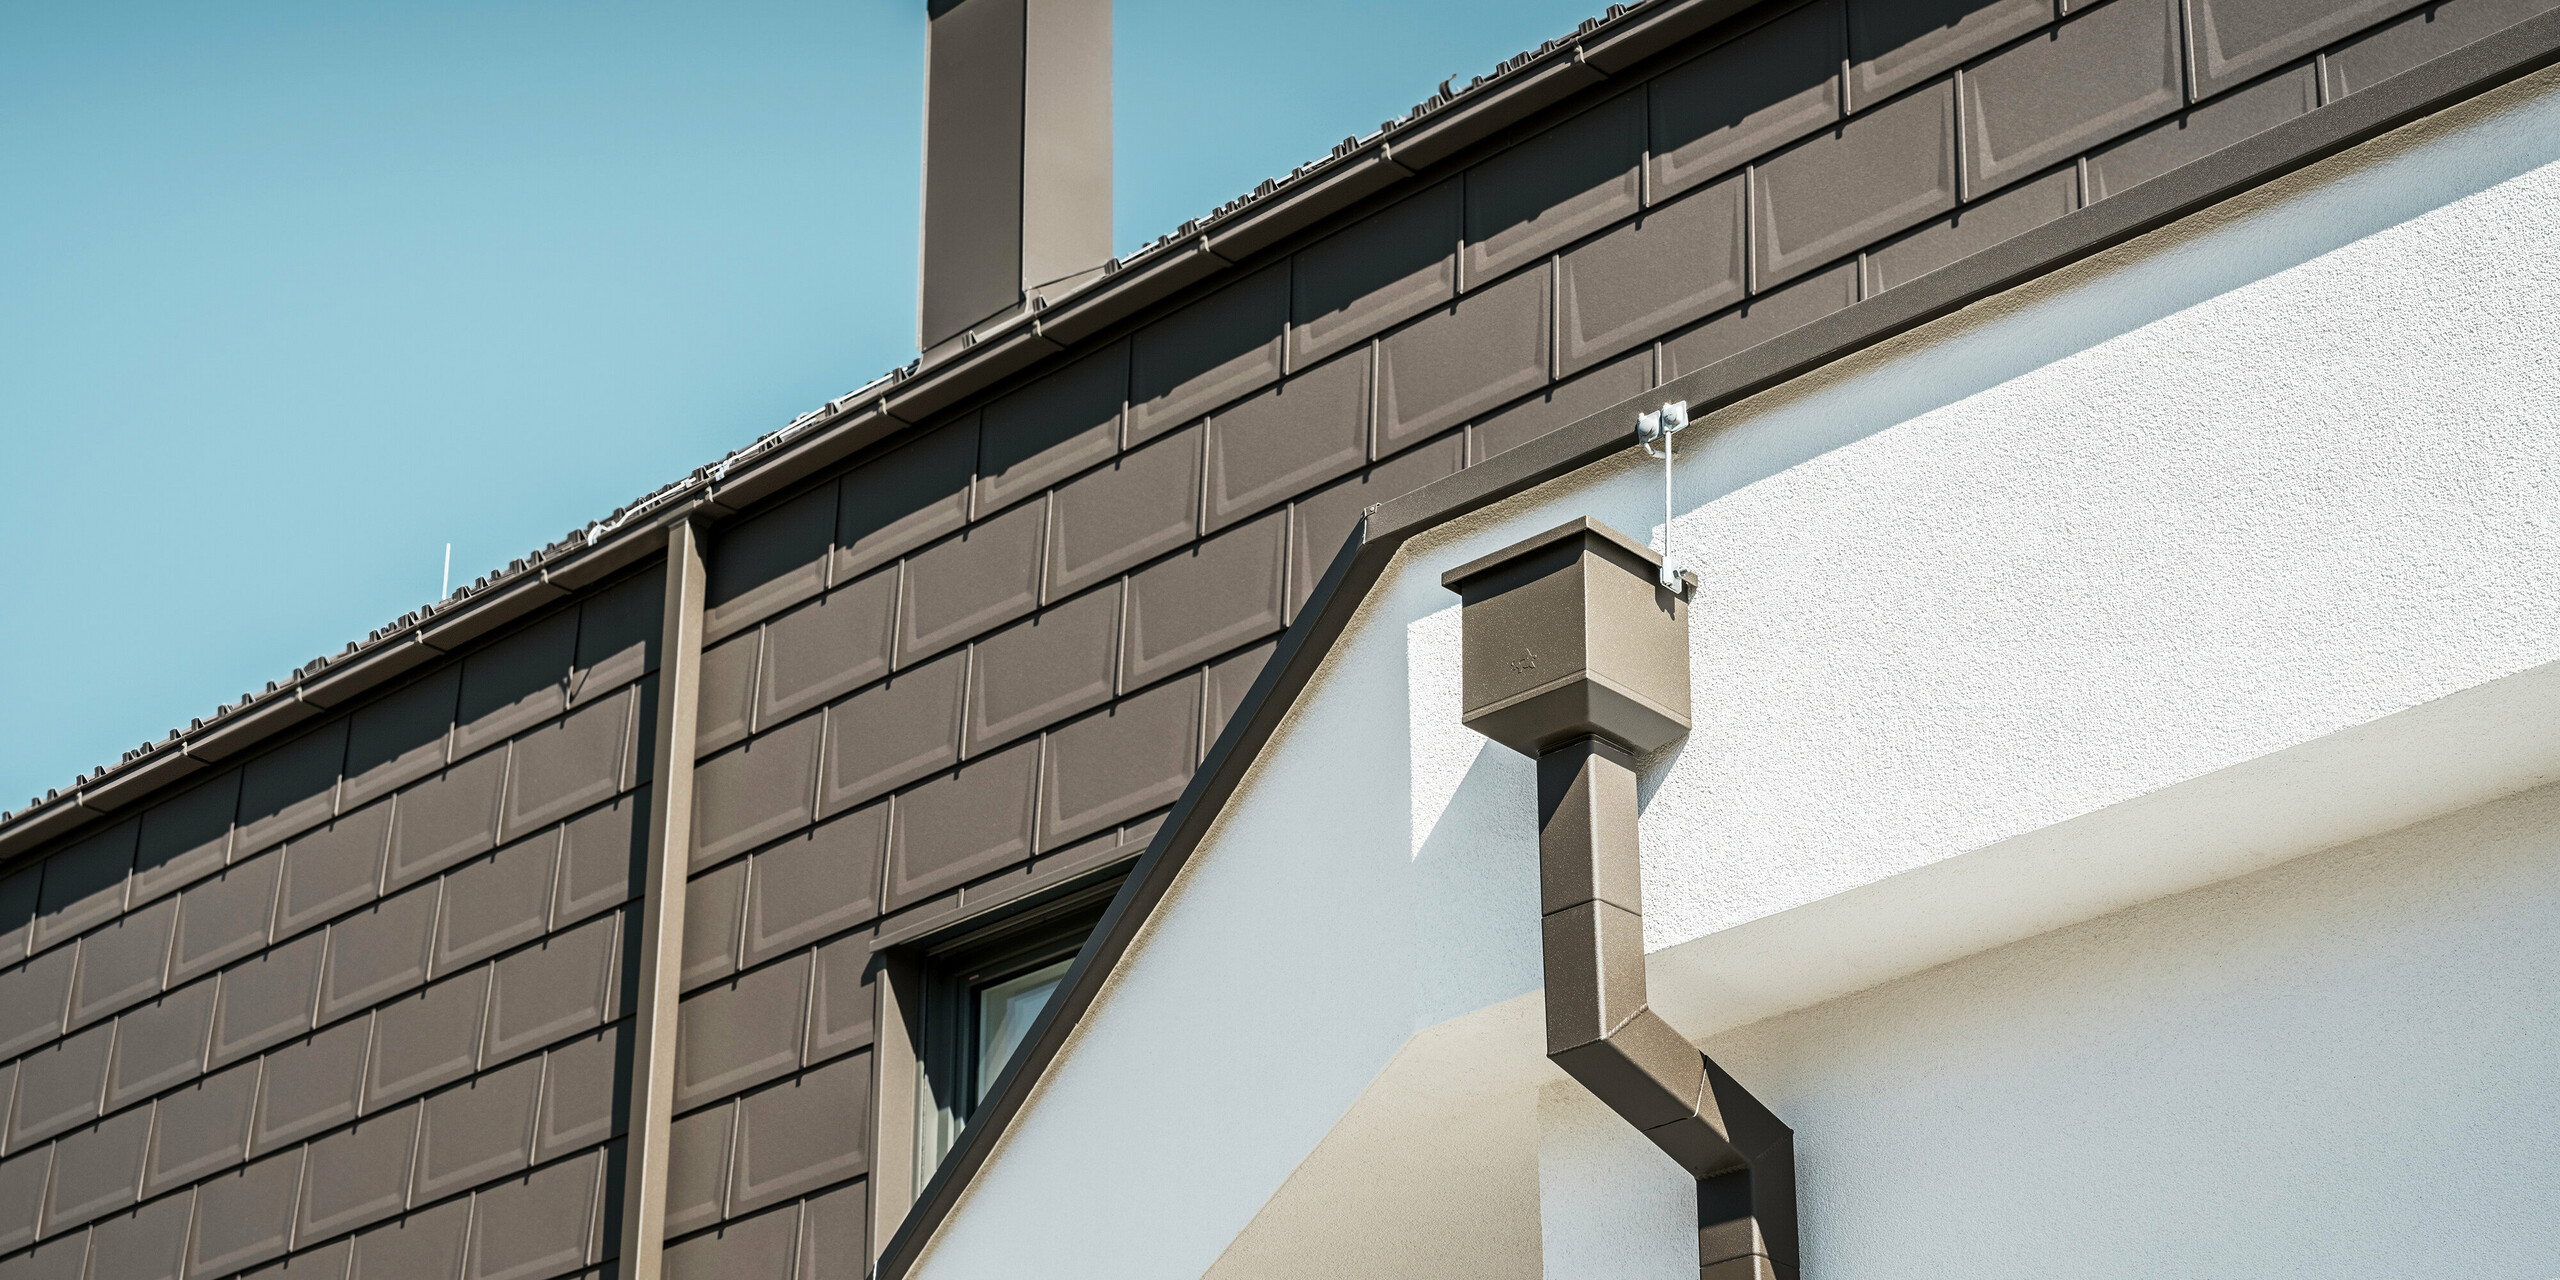 Detailaufnahme des Dachrandes bzw. der Fassade eines Hauses in Neukirchen, Österreich, ausgestattet mit PREFA R.16 Dachplatten in P.10 braun. Sowohl die Dachplatten, die bei diesem Gebäude als Dach- und Fassadenverkleidung dienen, als auch die Dachentwässerung, bestehend aus Vierkantrohr, Wassersammelkasten und Kastenrinne, sind in der gleichen Farbe gehalten und bieten eine einheitliche, hochwertige Ausführung. Die Verwendung von PREFA Produkten verleiht dem Gebäude ein zeitgemäßes Aussehen, während die ästhetische Einbindung der Entwässerungselemente die funktionale Eleganz des Designs unterstreicht.